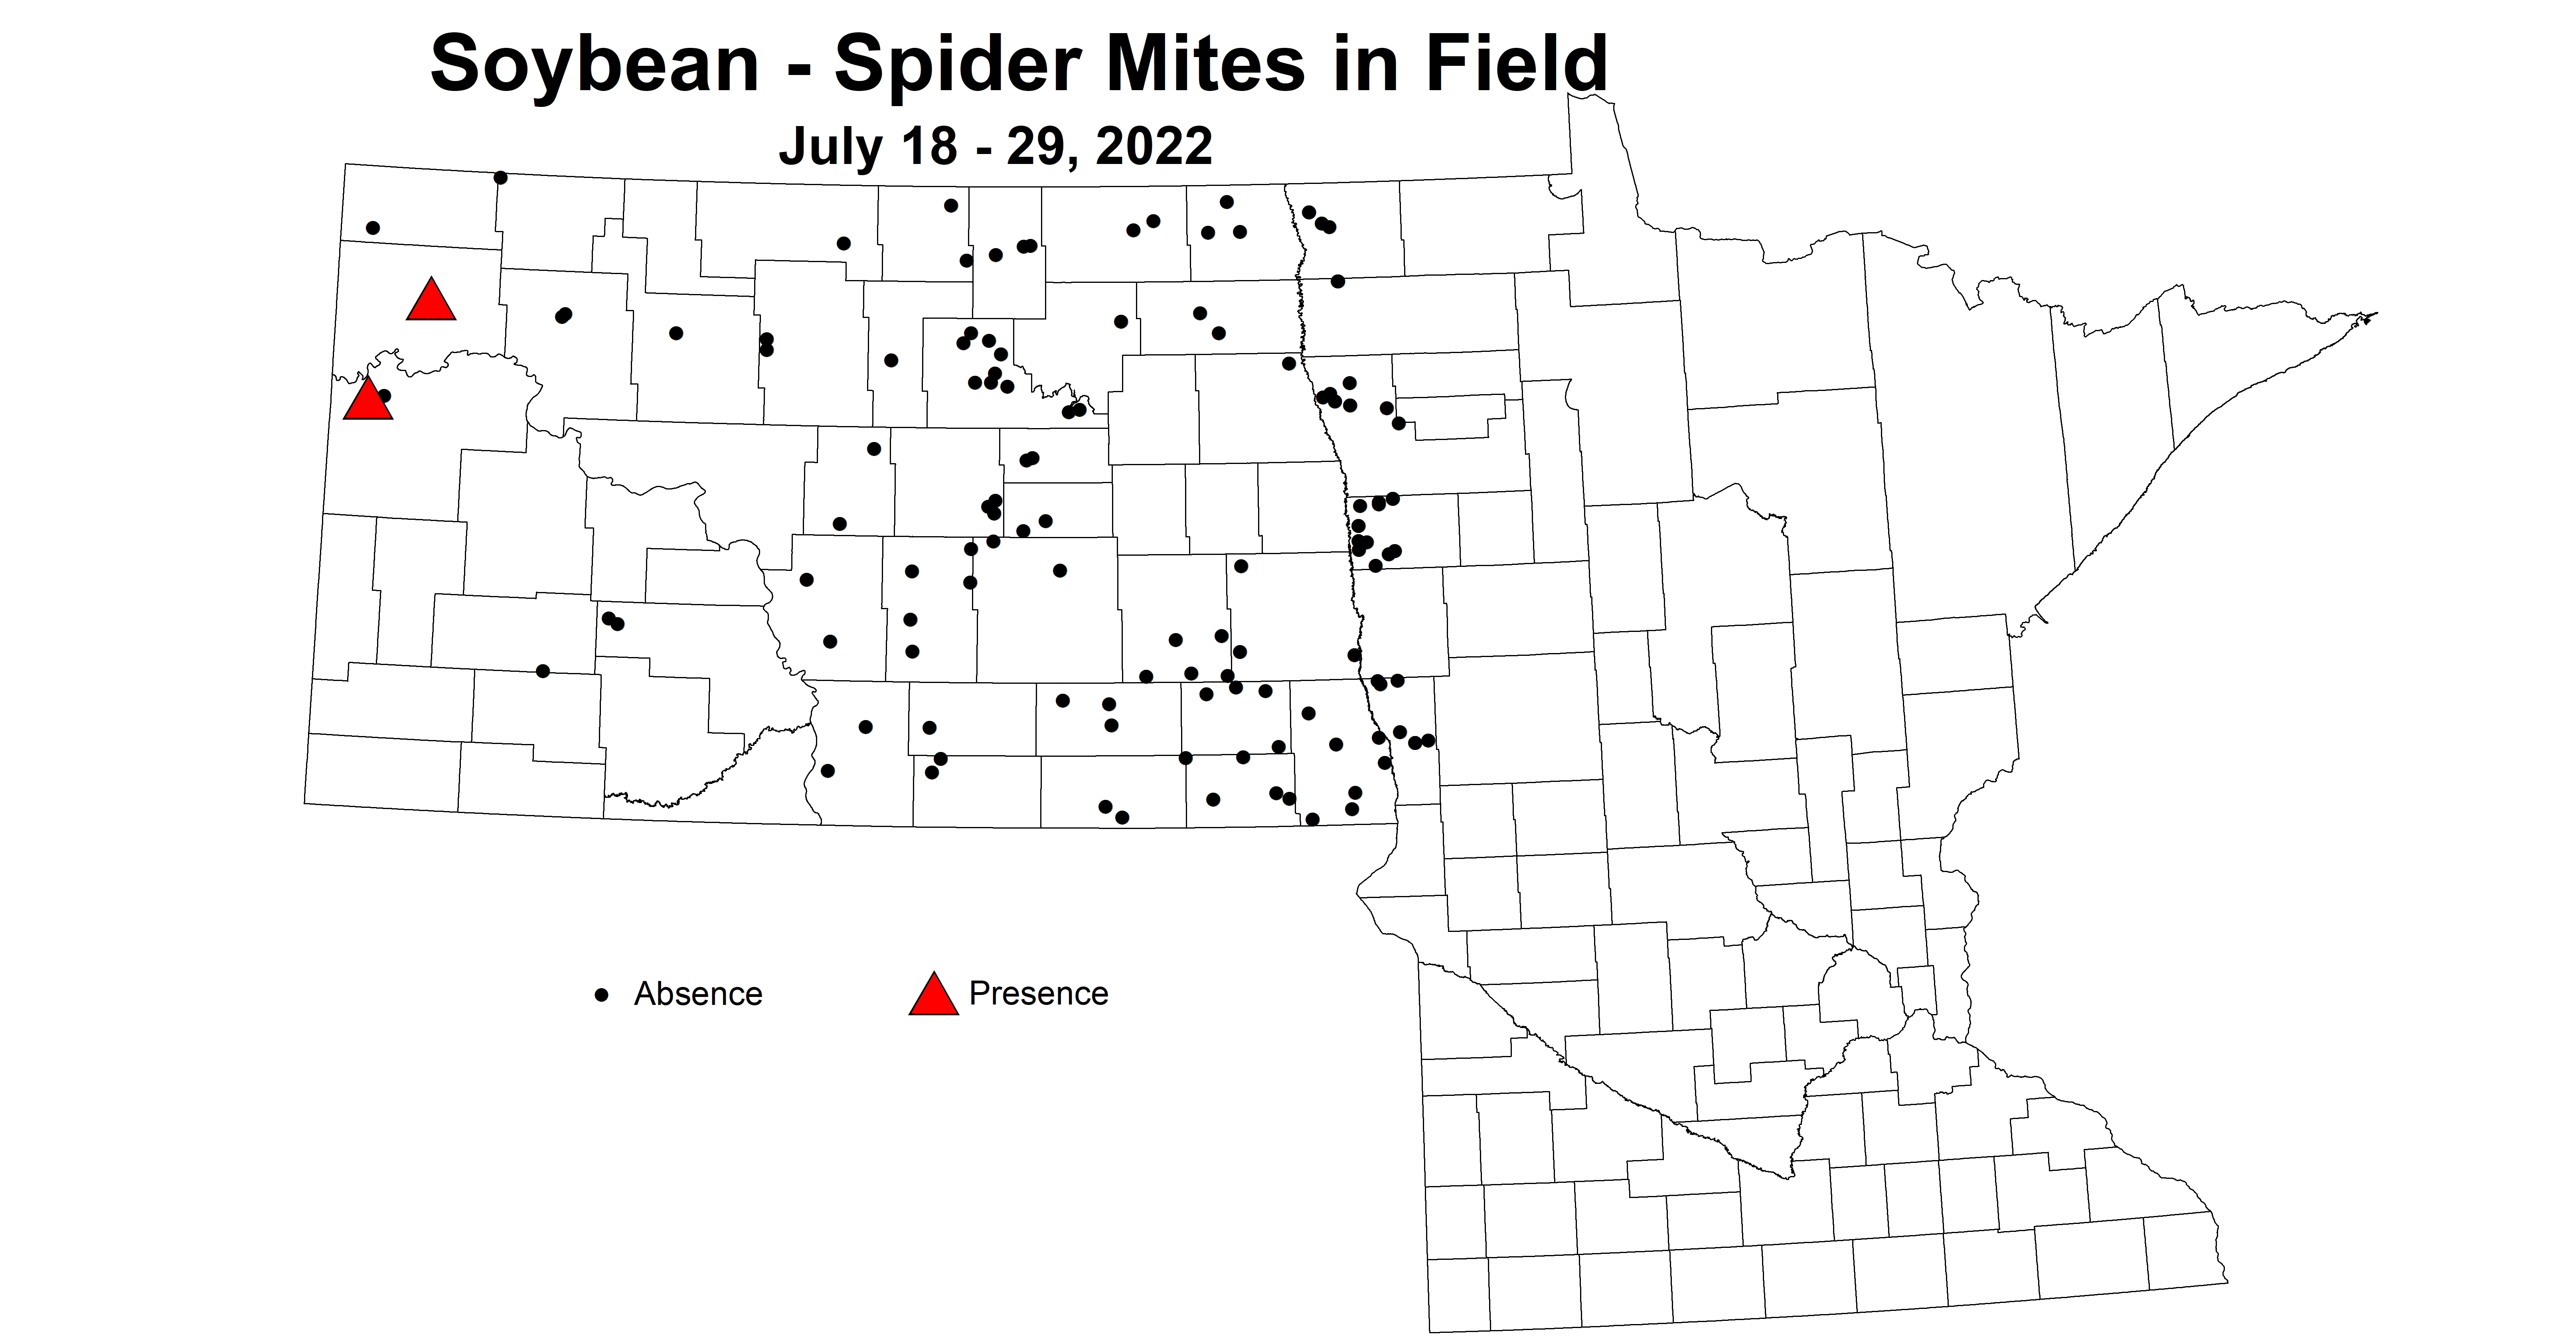 soybean spider mites in field 2022 7.18-7.29.jpg